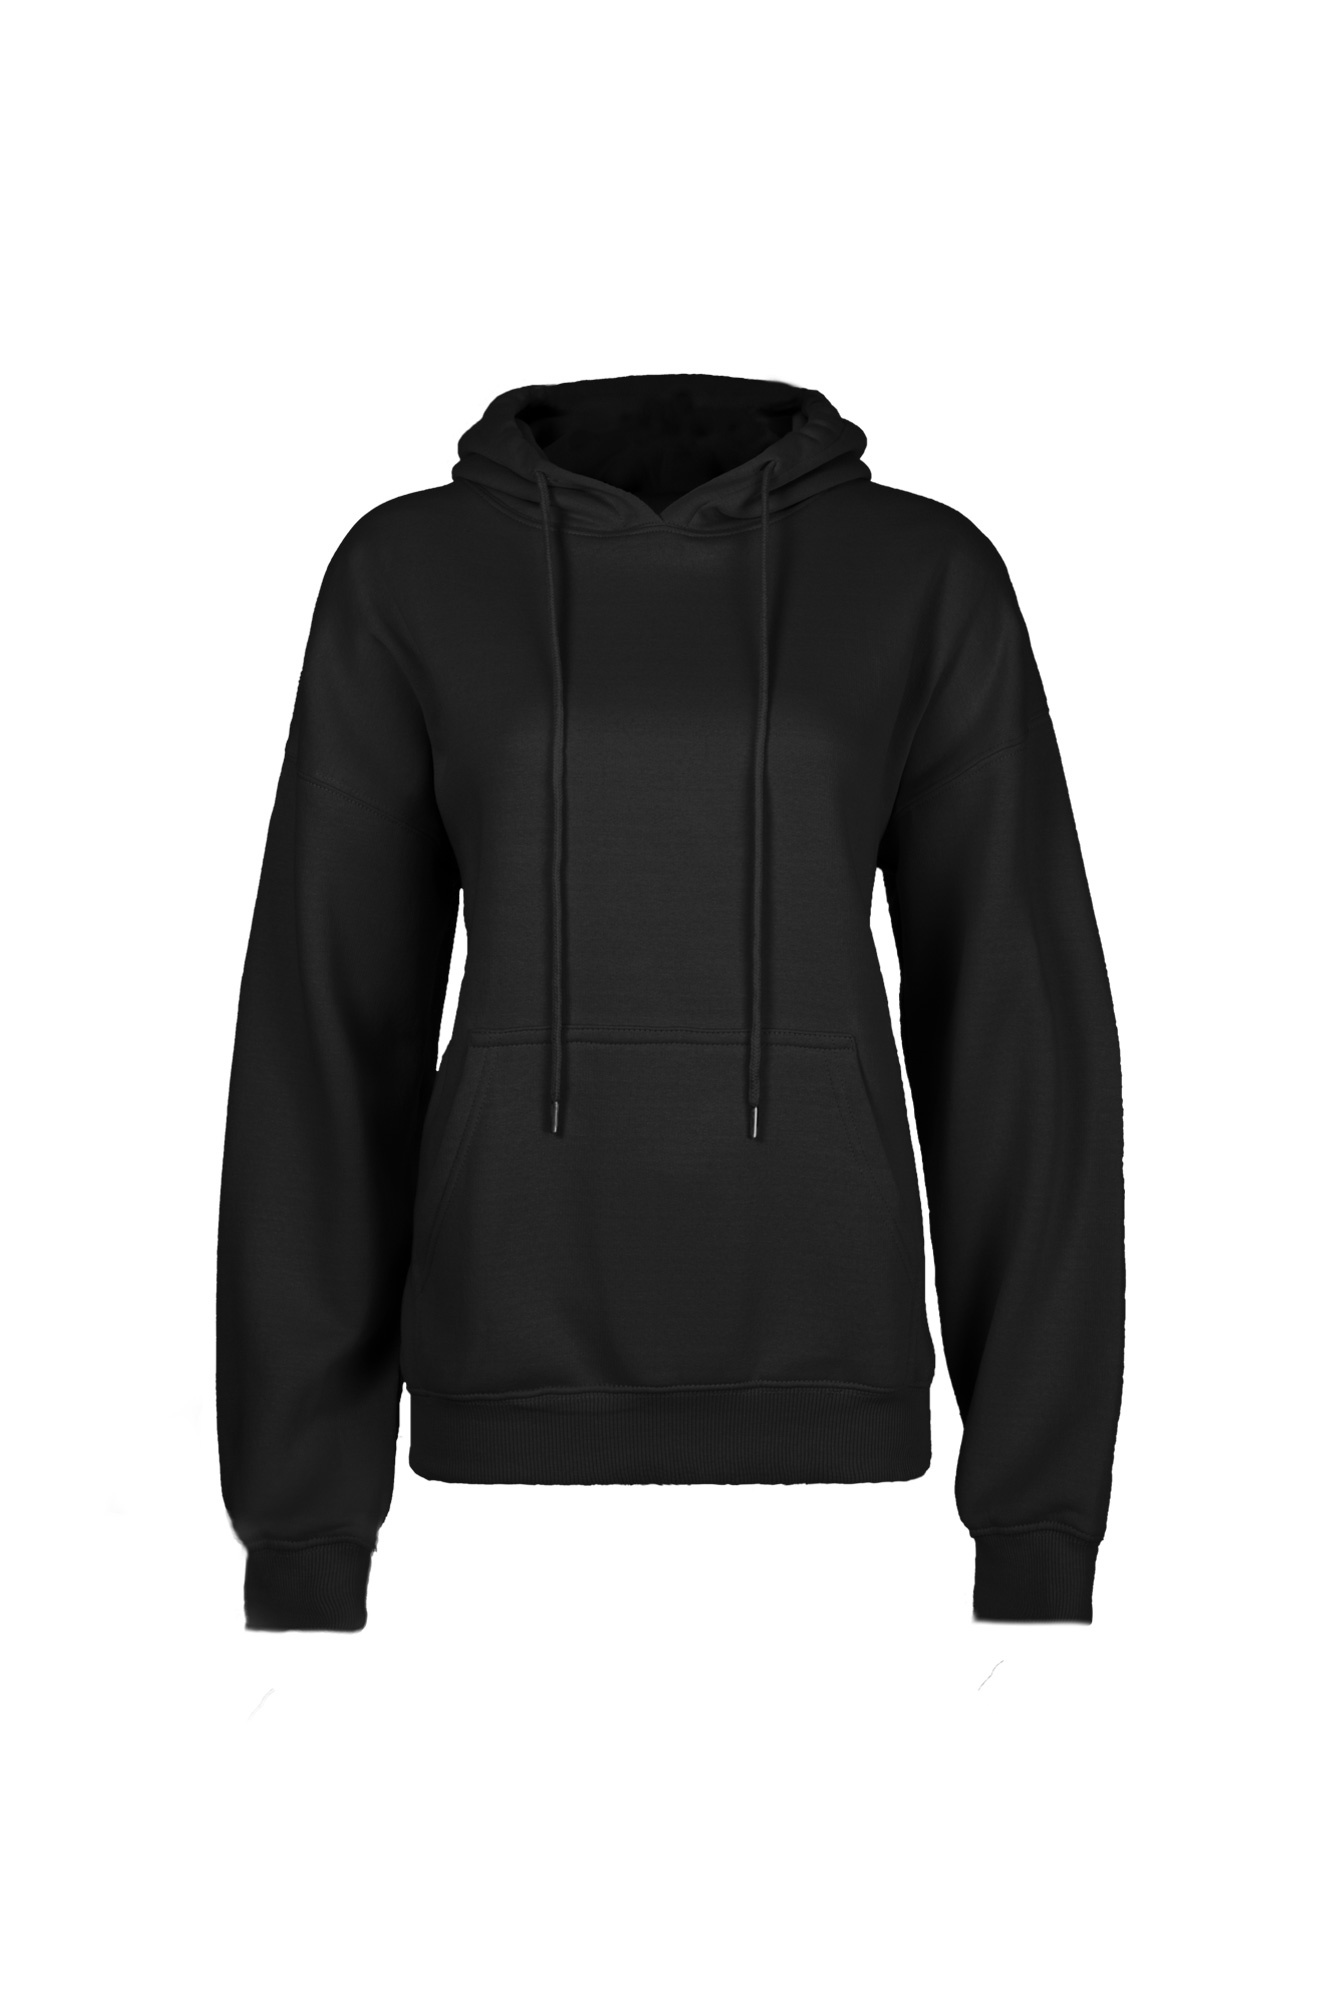 Mikuta Sweatshirt met capuchon zwart casual uitstraling Mode Joggingkleren Sweatshirts met capuchon 